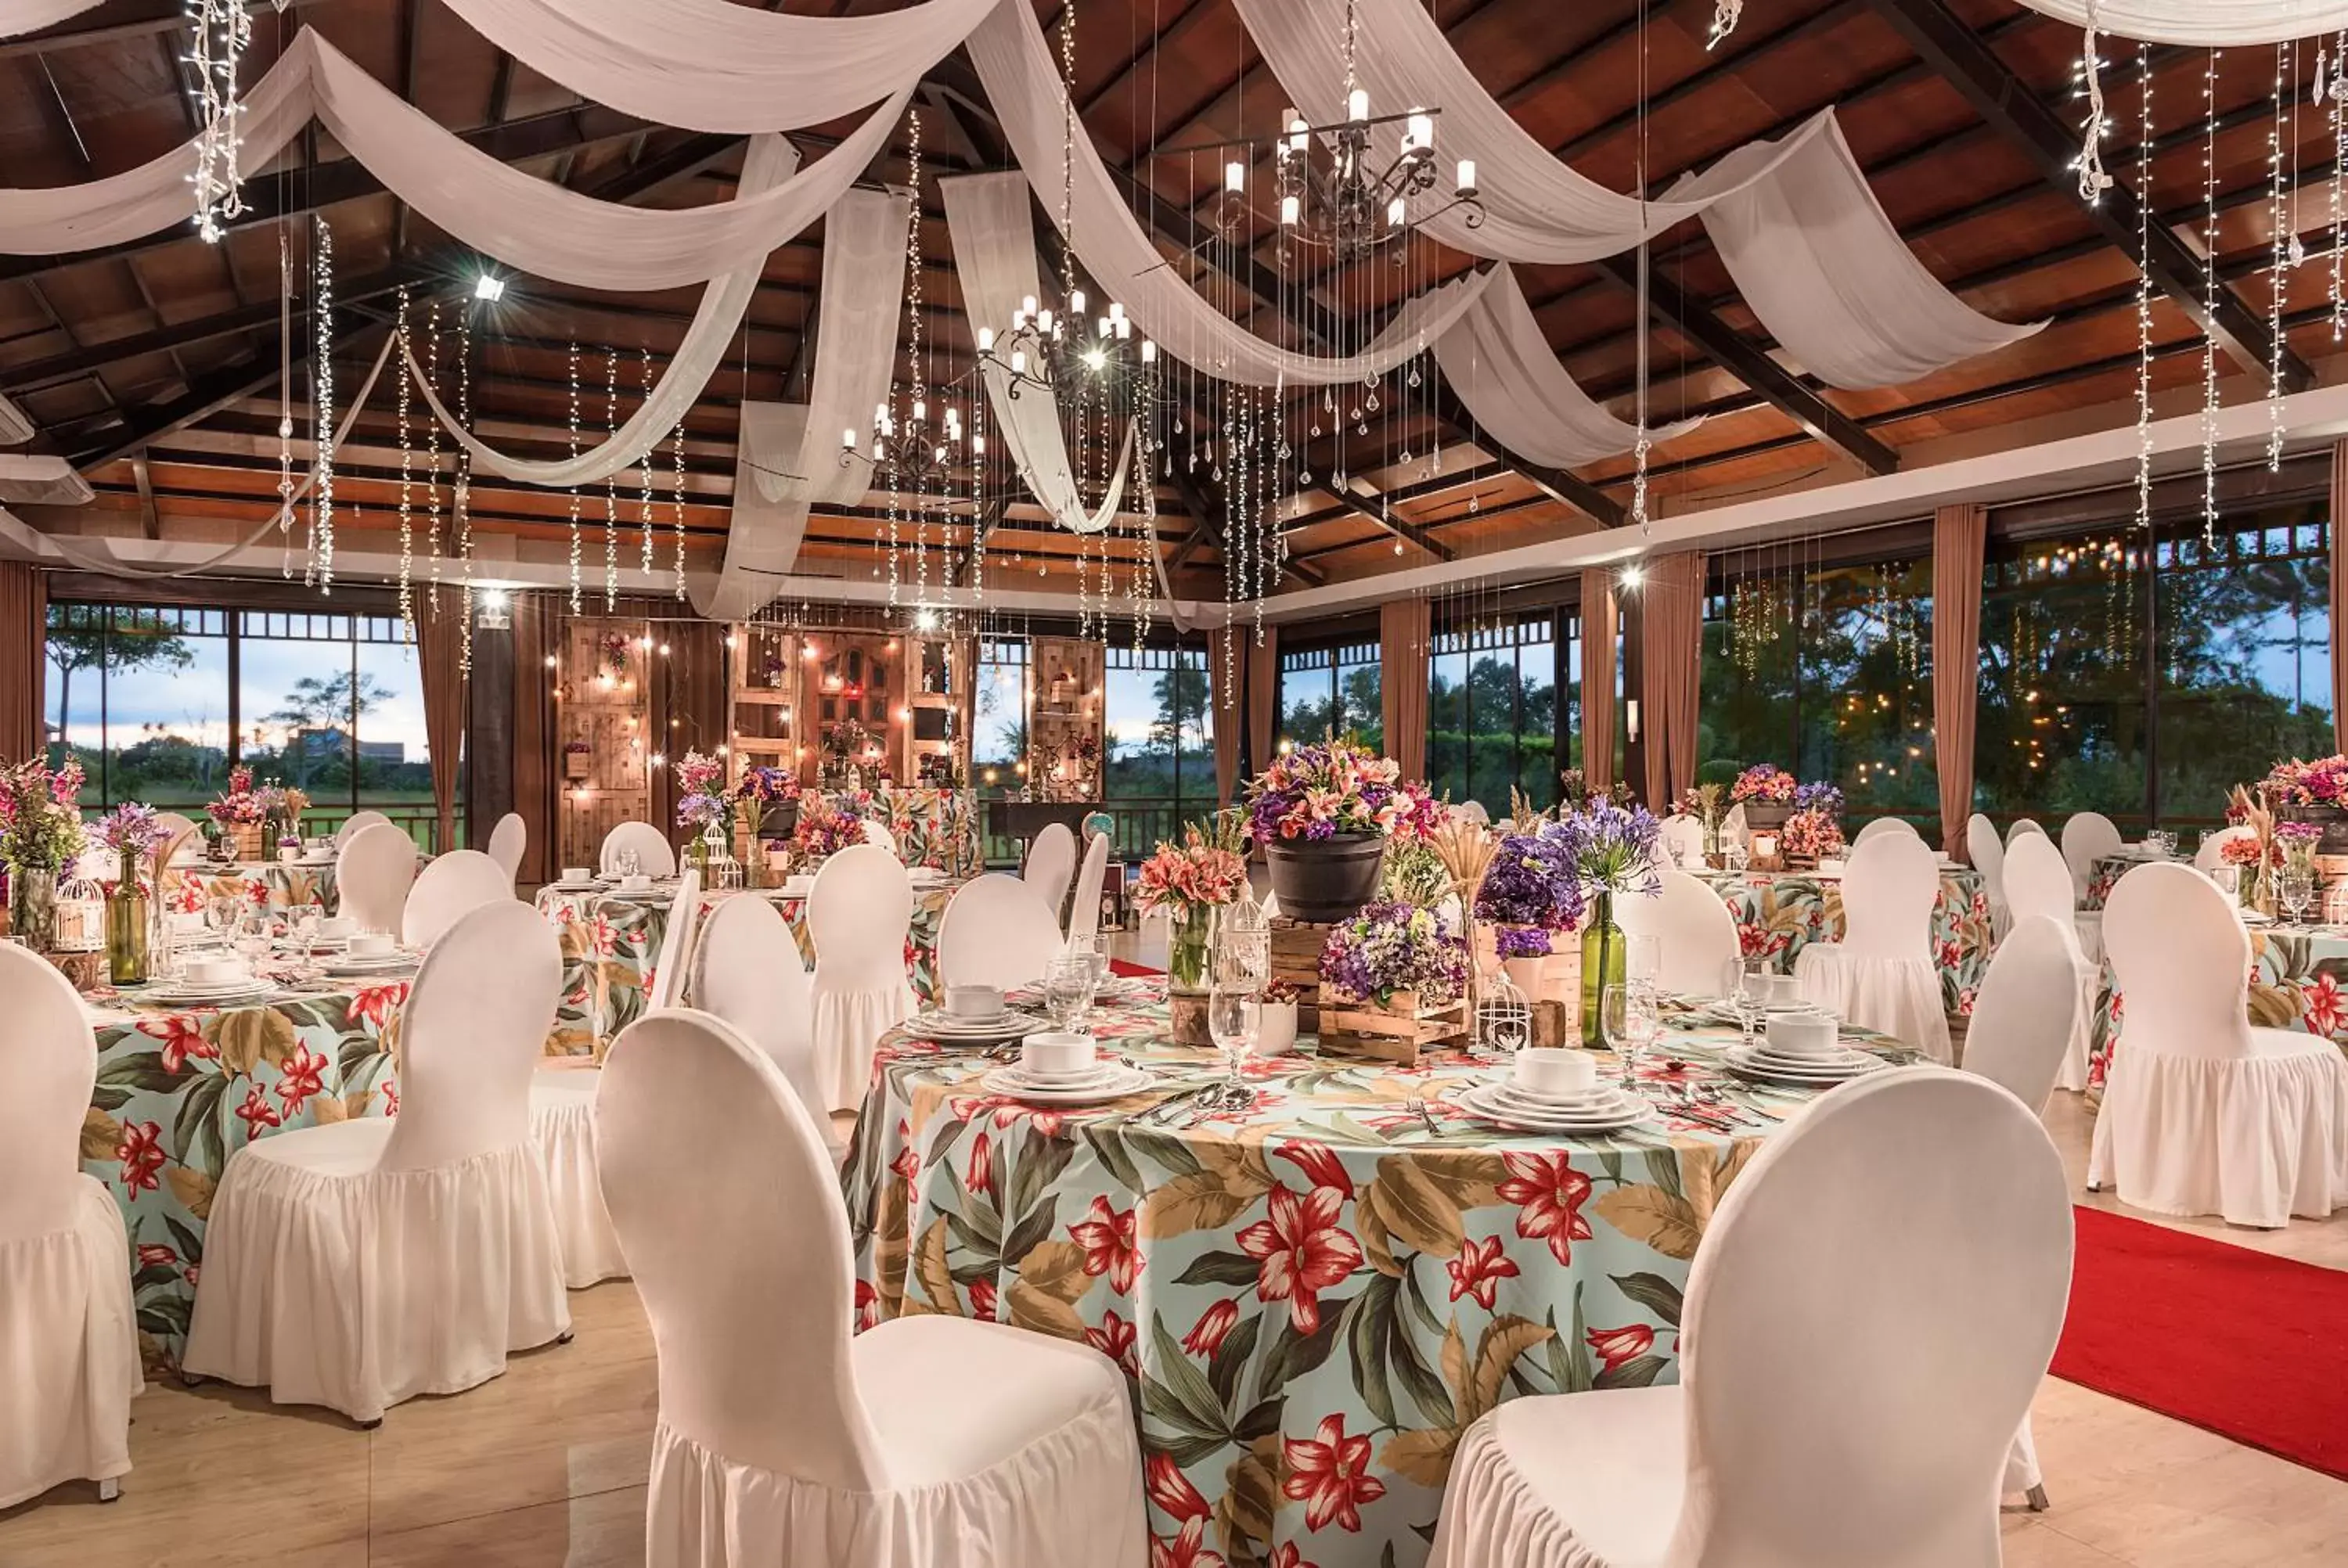 Banquet/Function facilities, Banquet Facilities in Hotel Kimberly Tagaytay